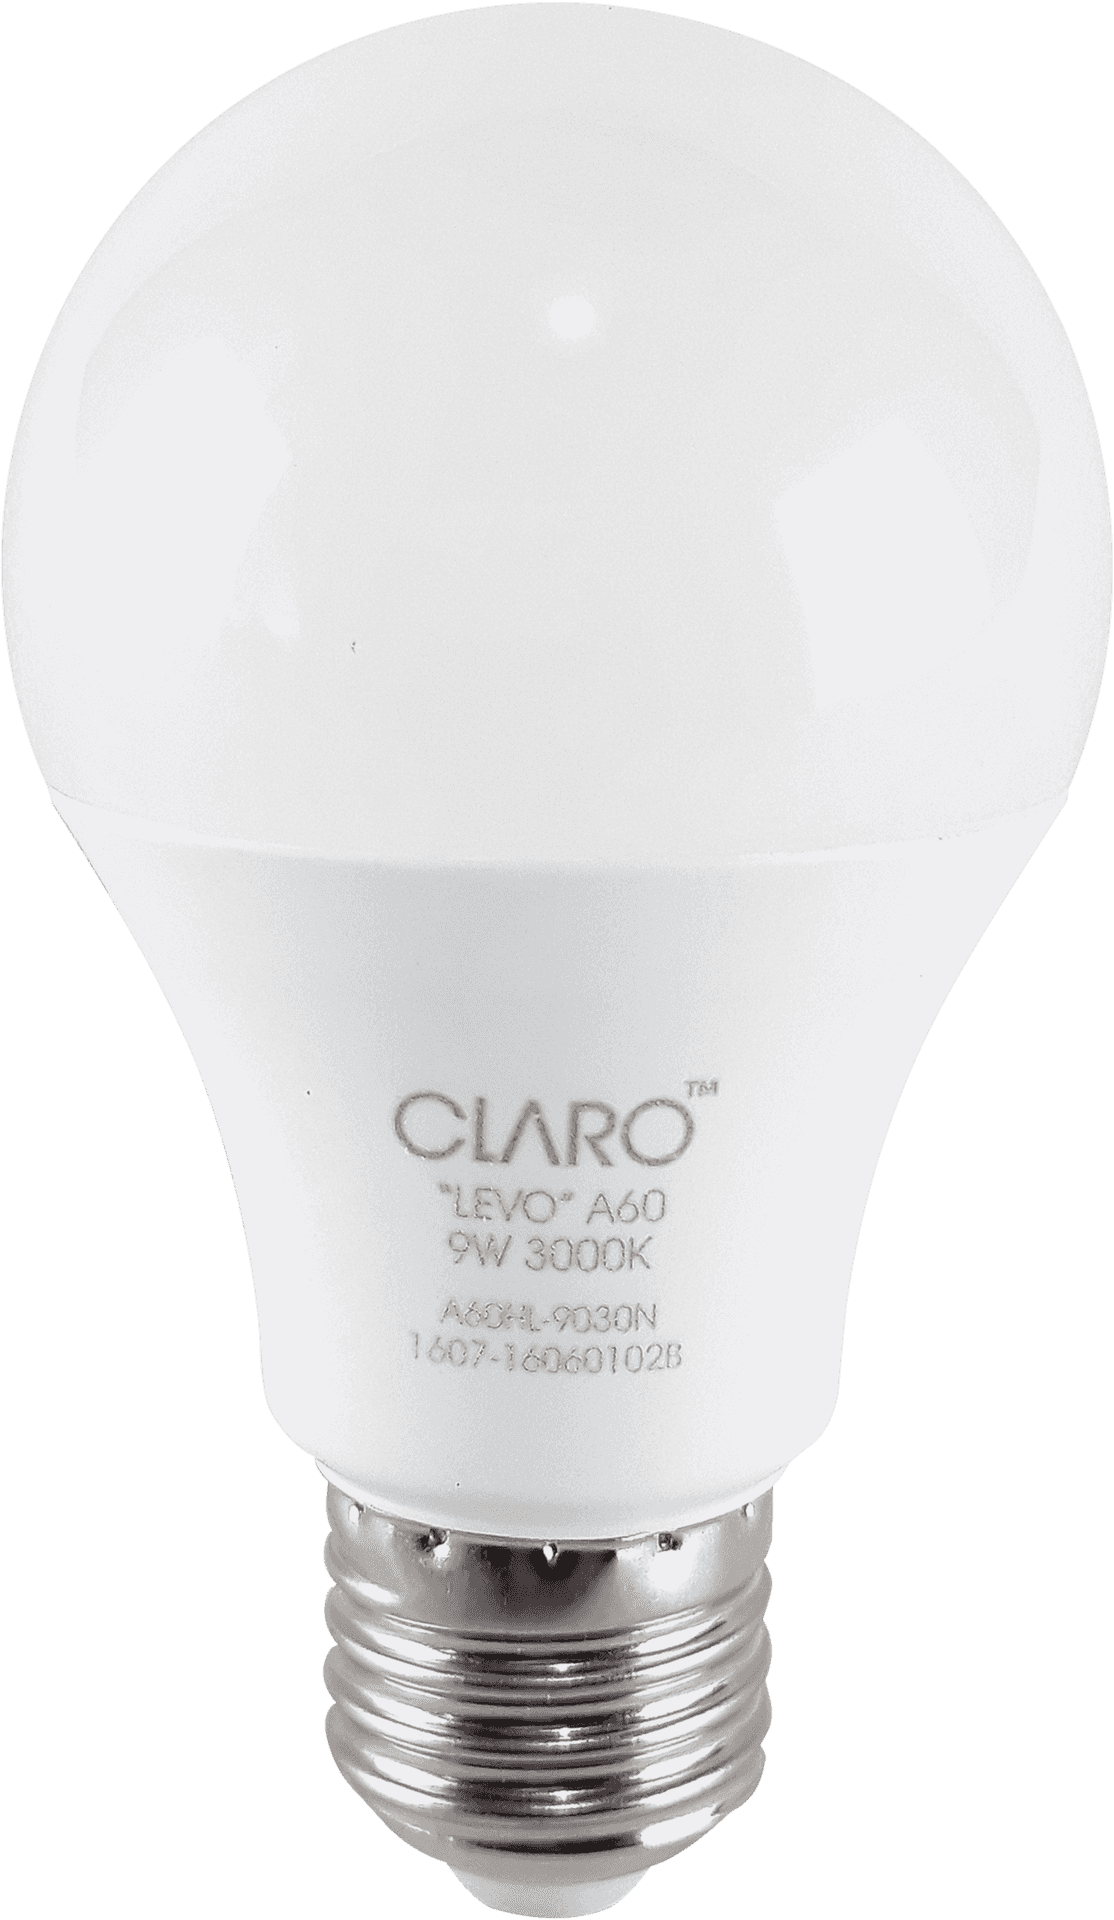 L E D Light Bulb Claro9 W3000 K PNG